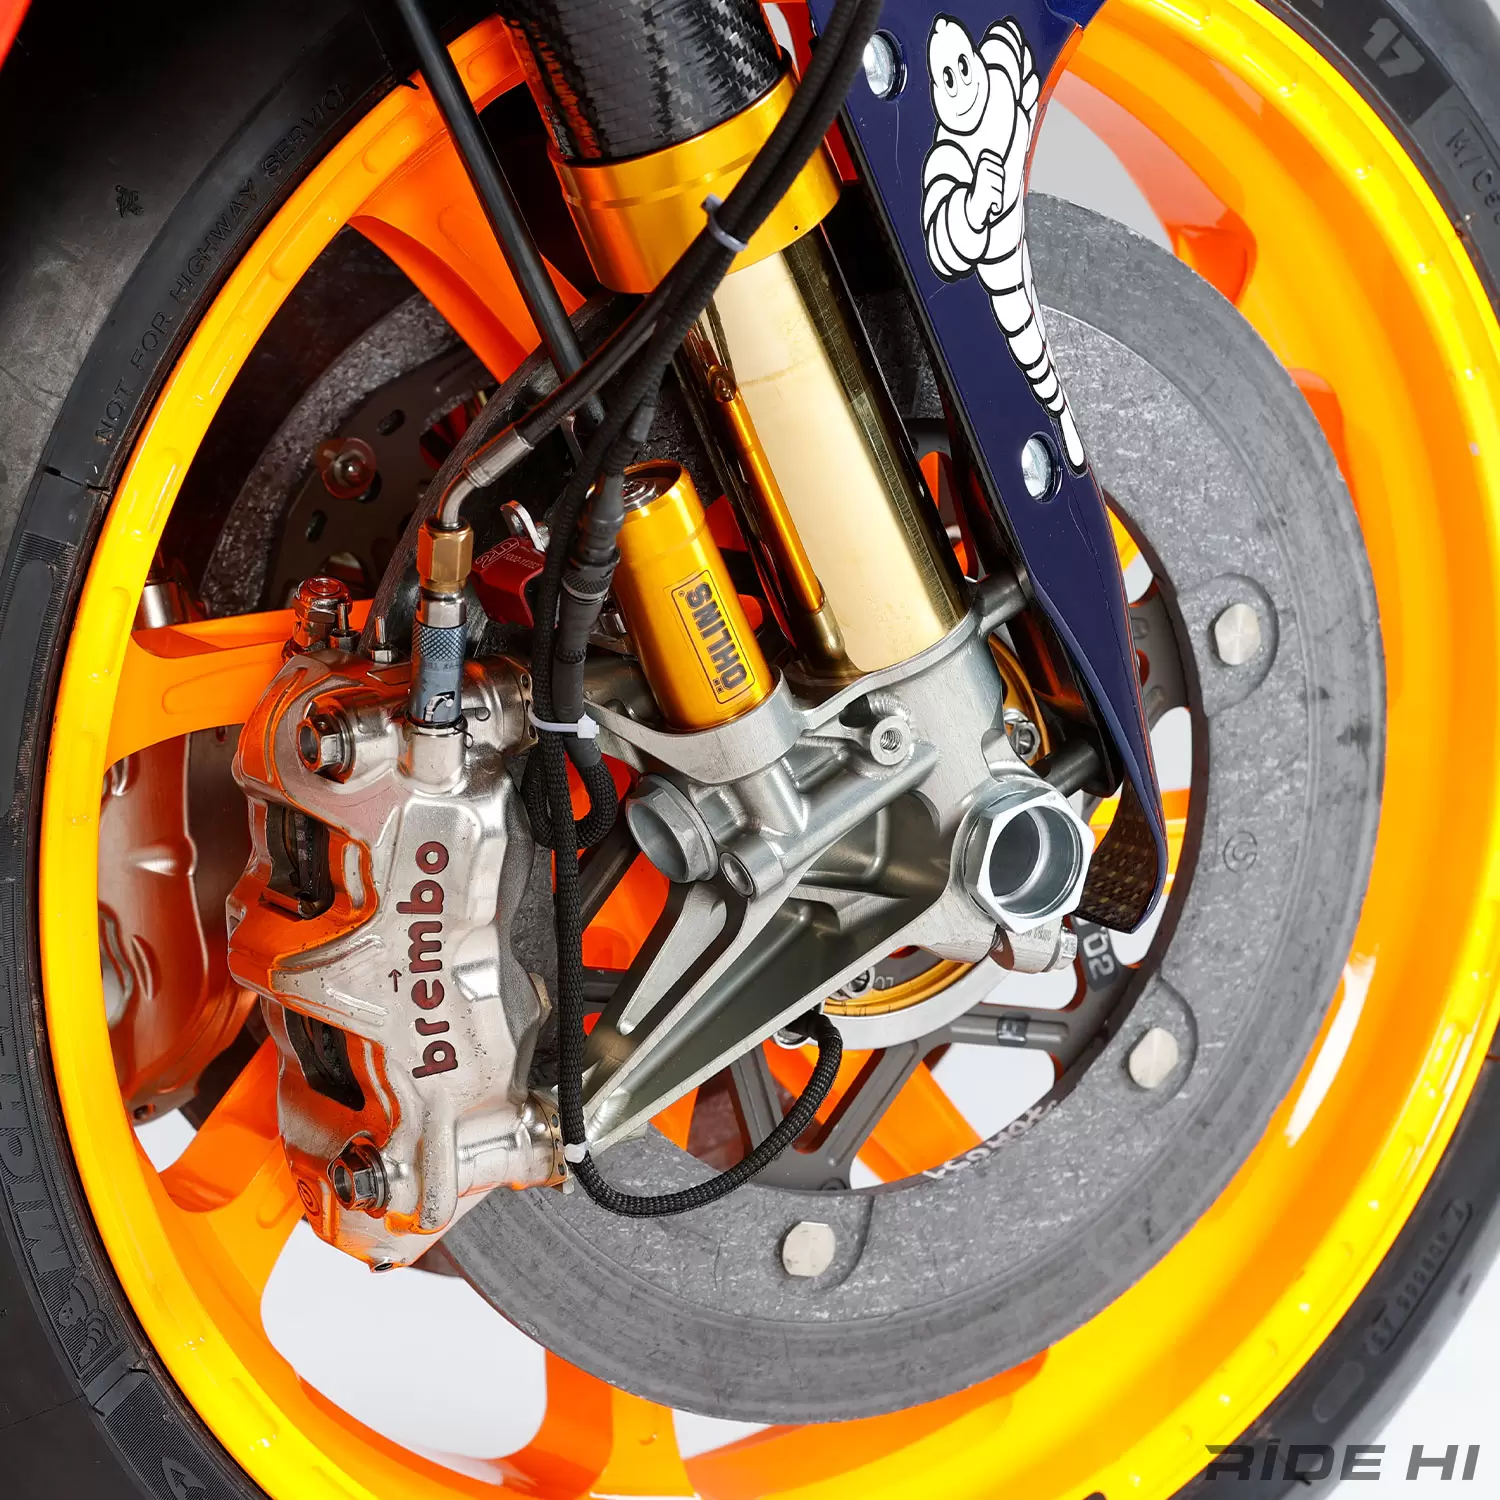 MotoGPマシンのカーボンブレーキはカスタムパーツで装着できますか